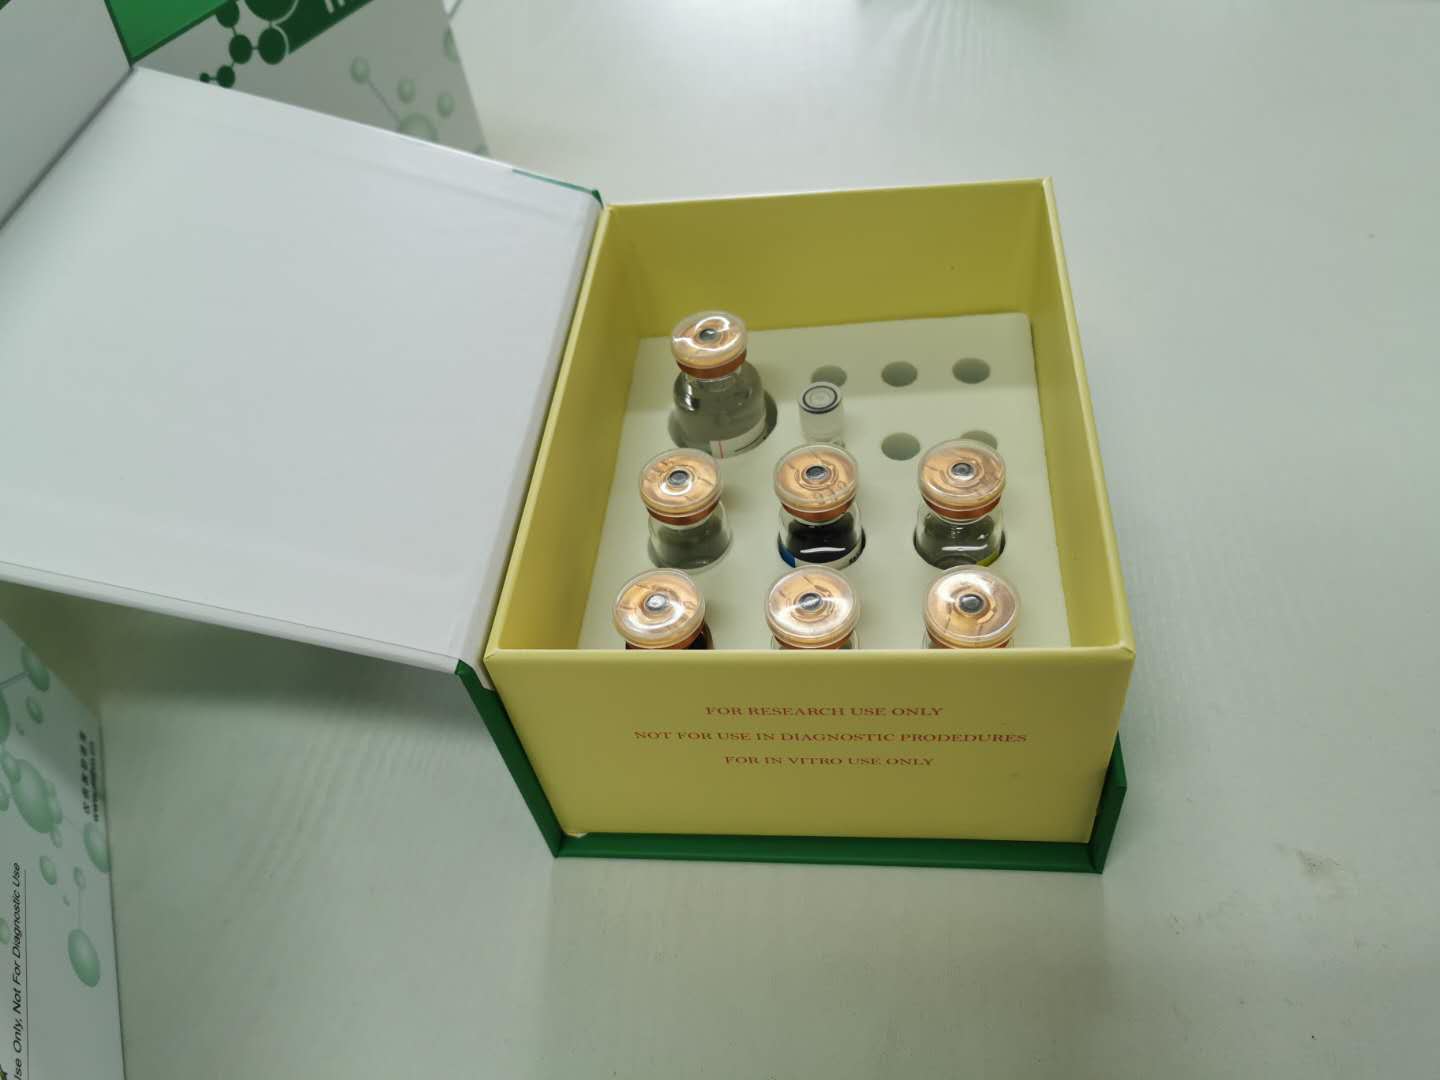 A-GHR 试剂盒在线销售索取